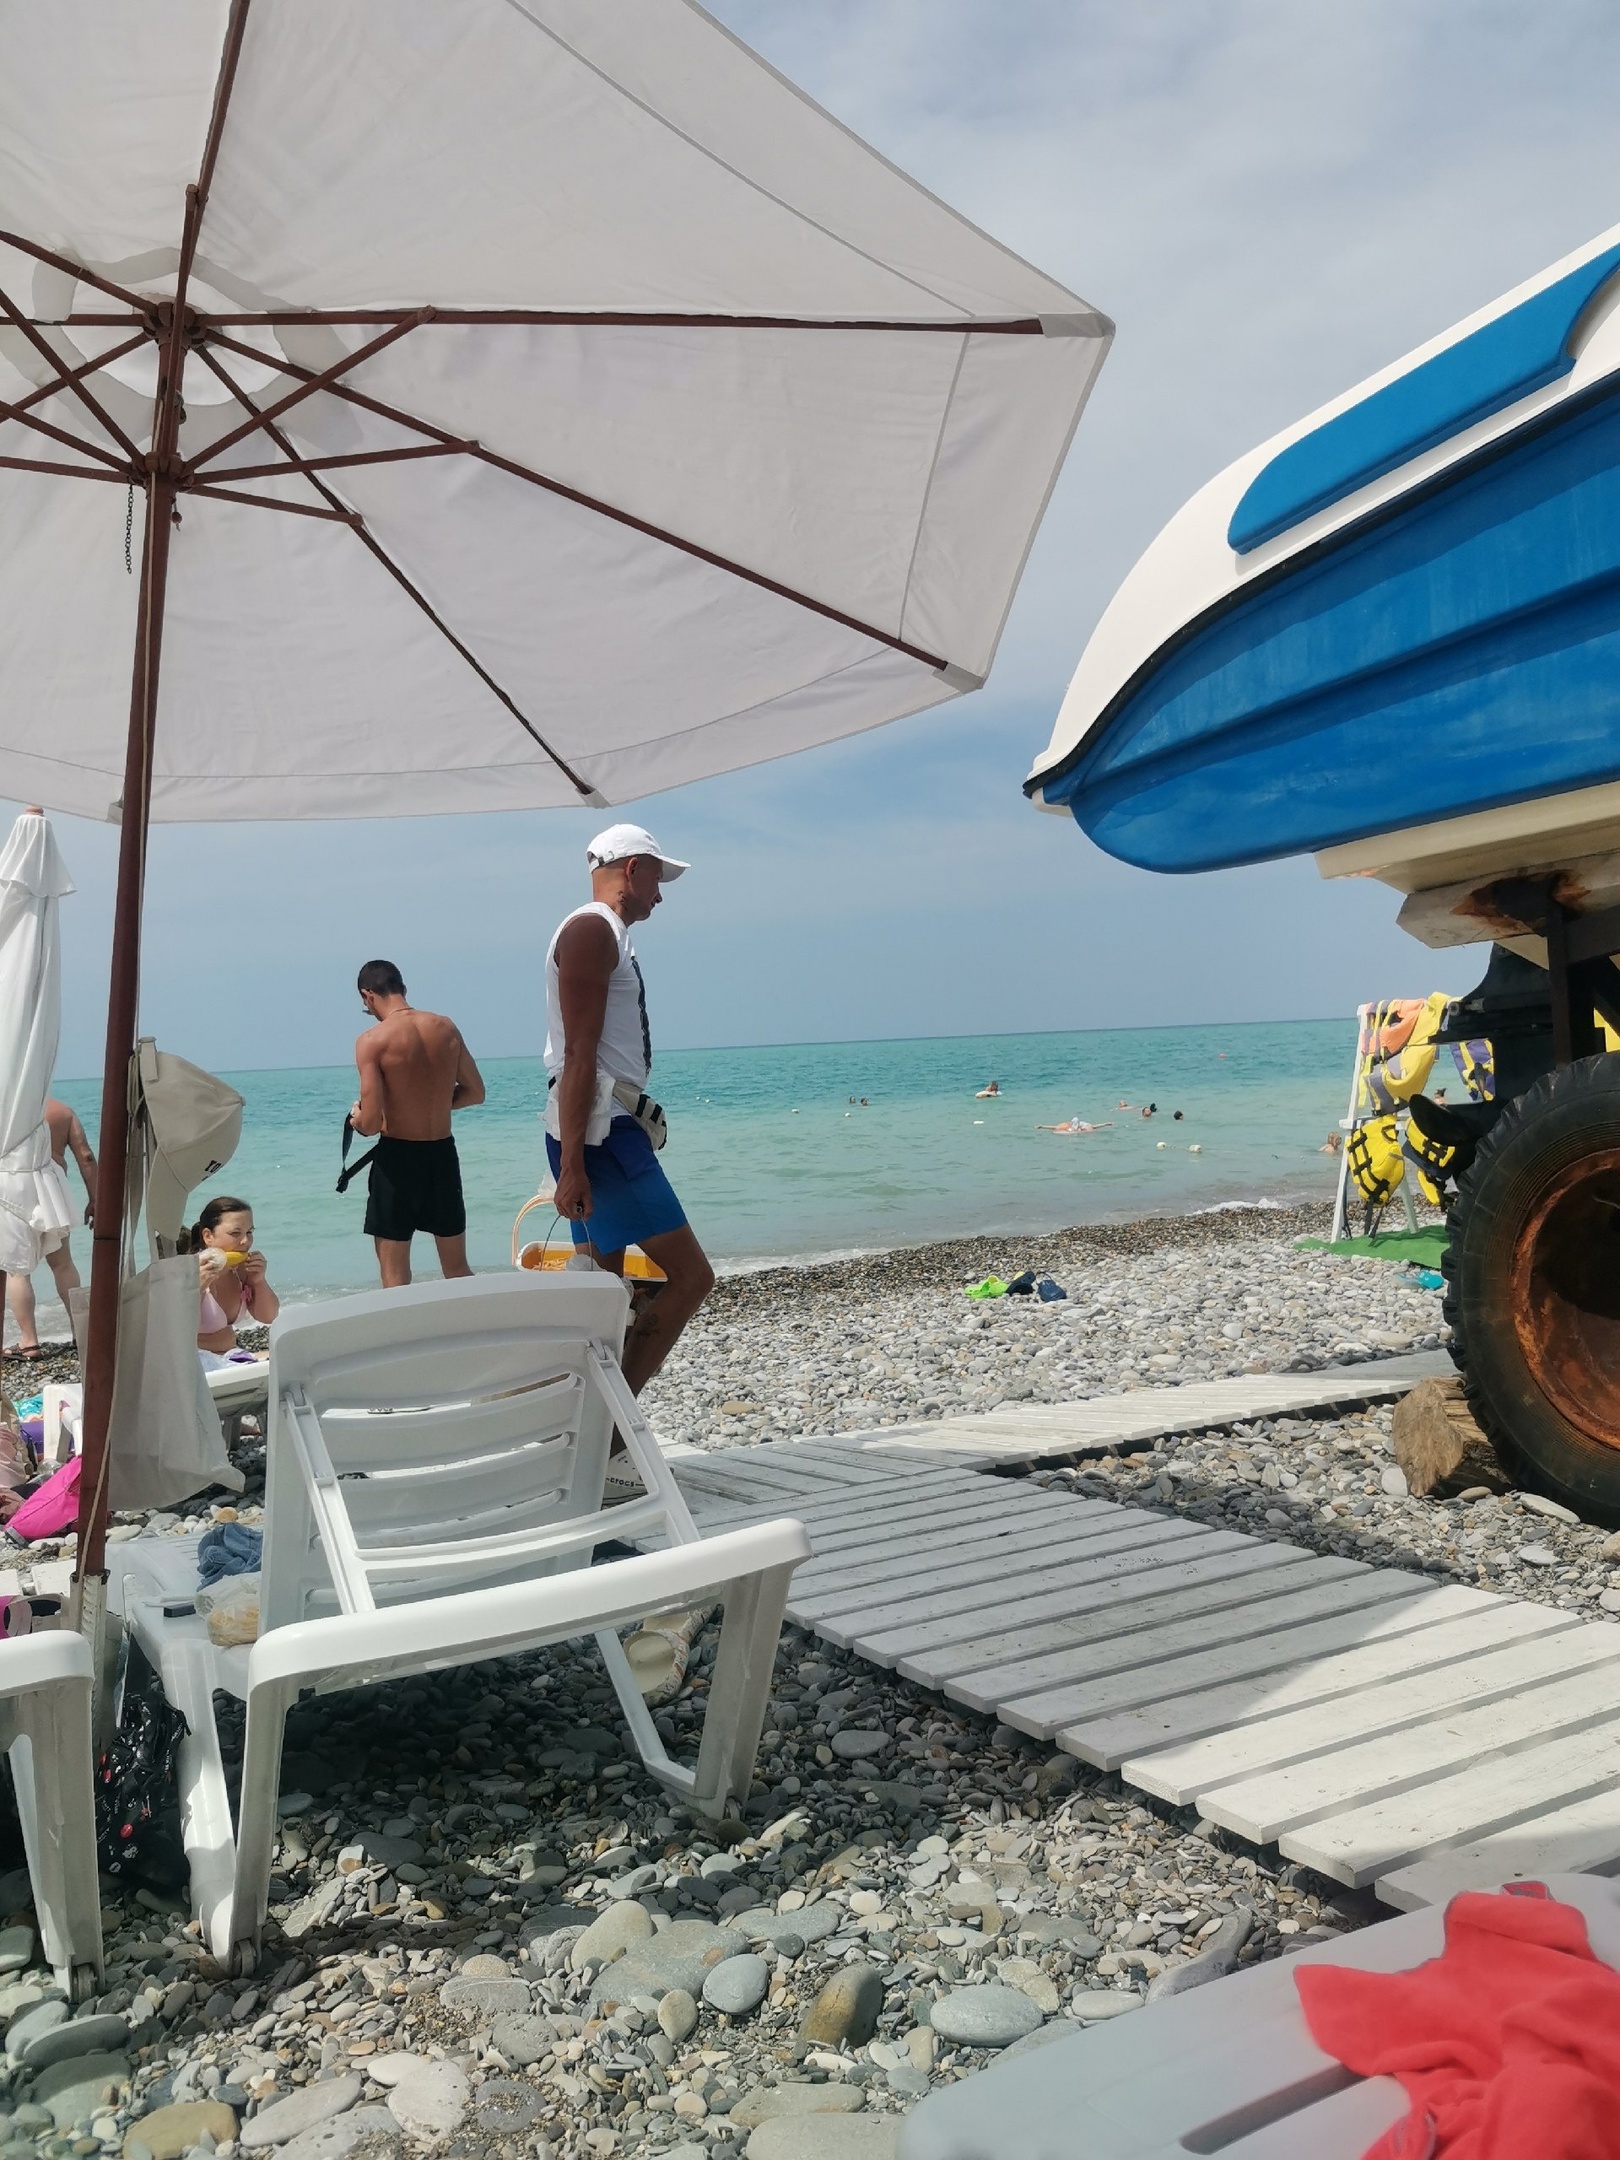 "Просто зря потратили деньги, в воду не пускают": на пляжах Анапы ввели полный запрет на купание в Черном море